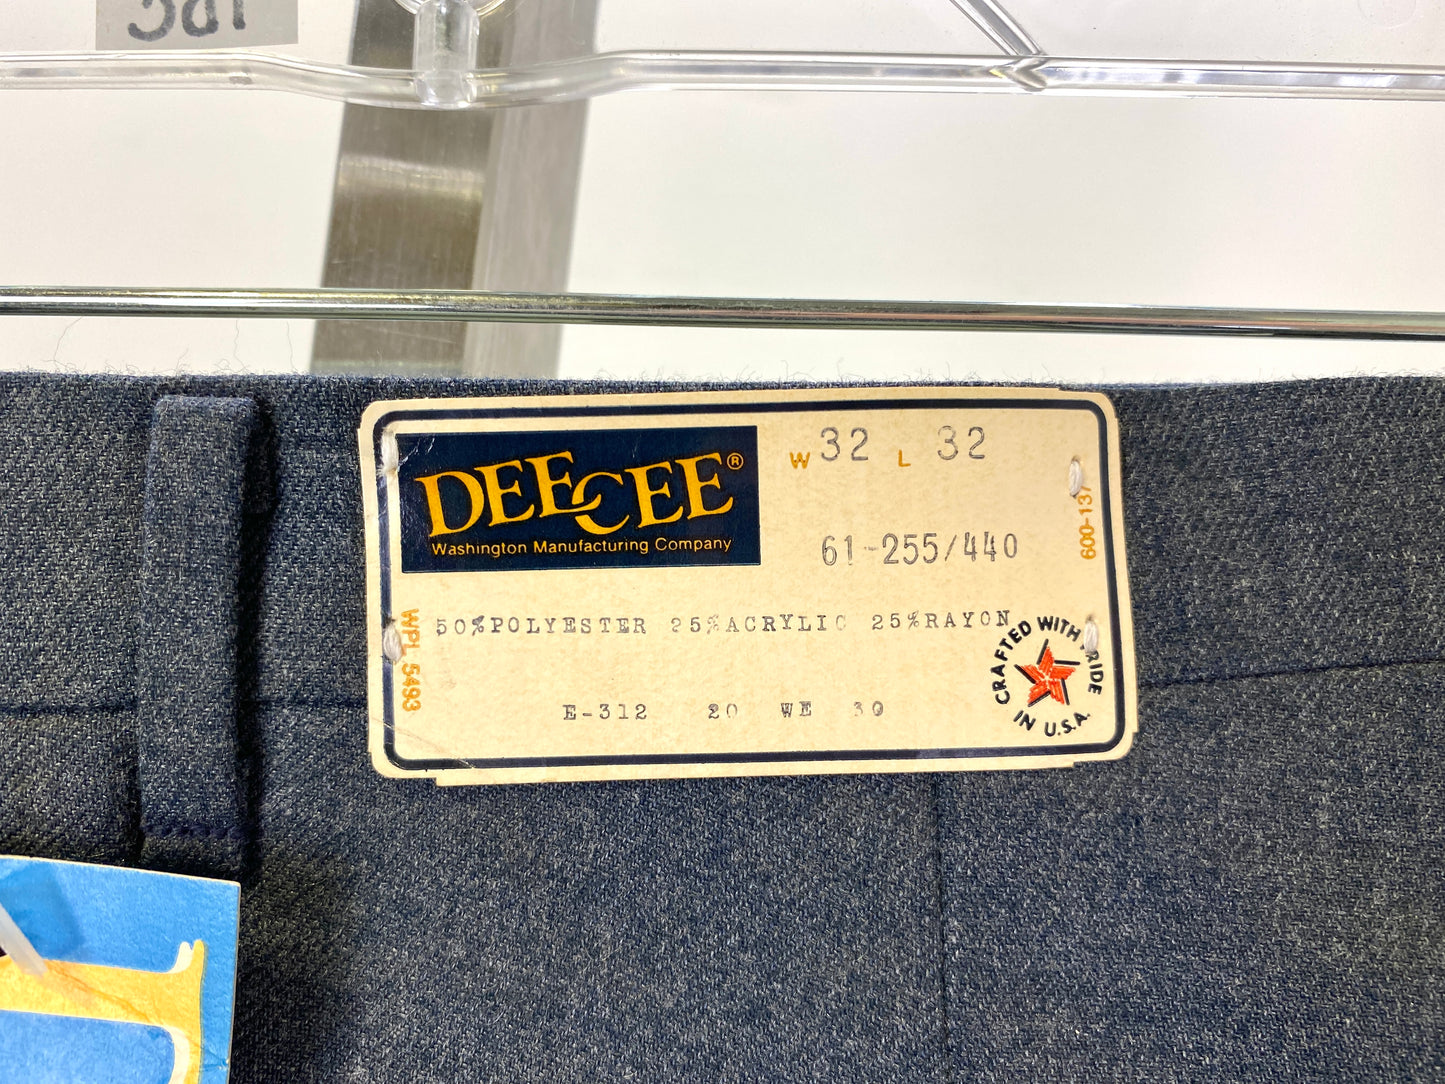 Vintage 1970s Deadstock Dee Cee Slacks, Men's Blue-Grey Trousers, NOS